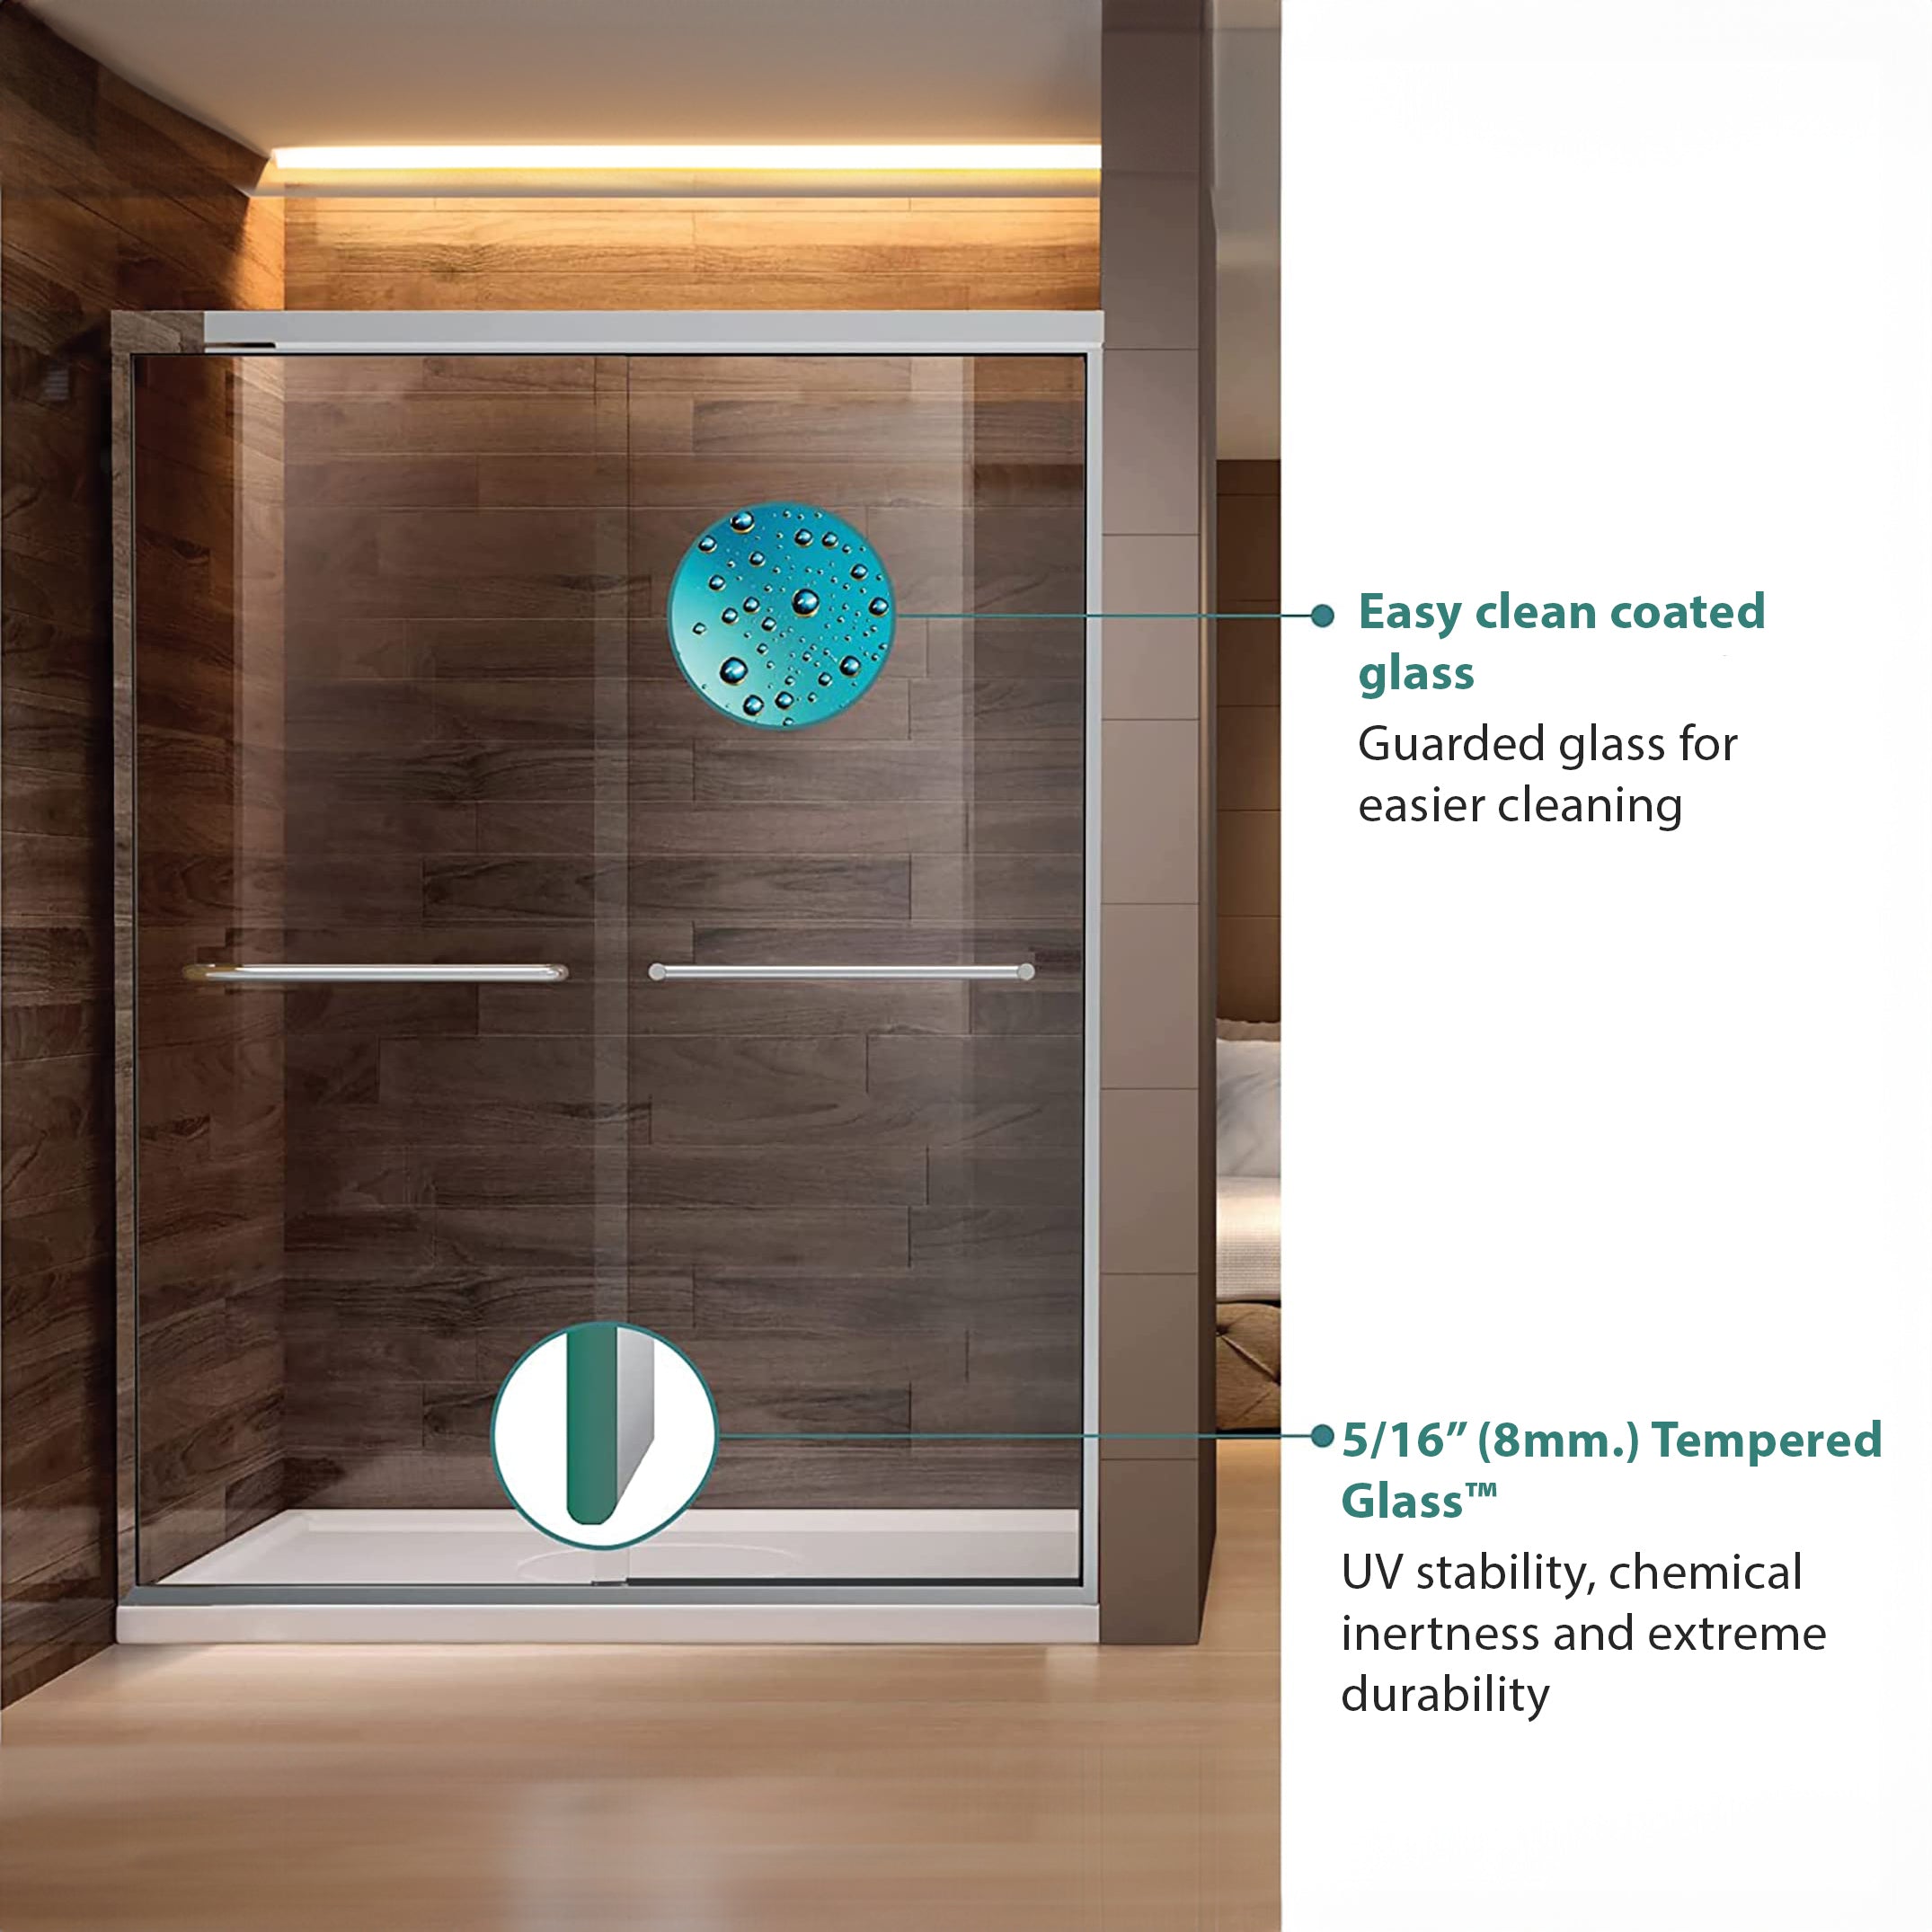 Dreamwerks Bright Chrome Sliding Shower Door - Available in 2 sizes